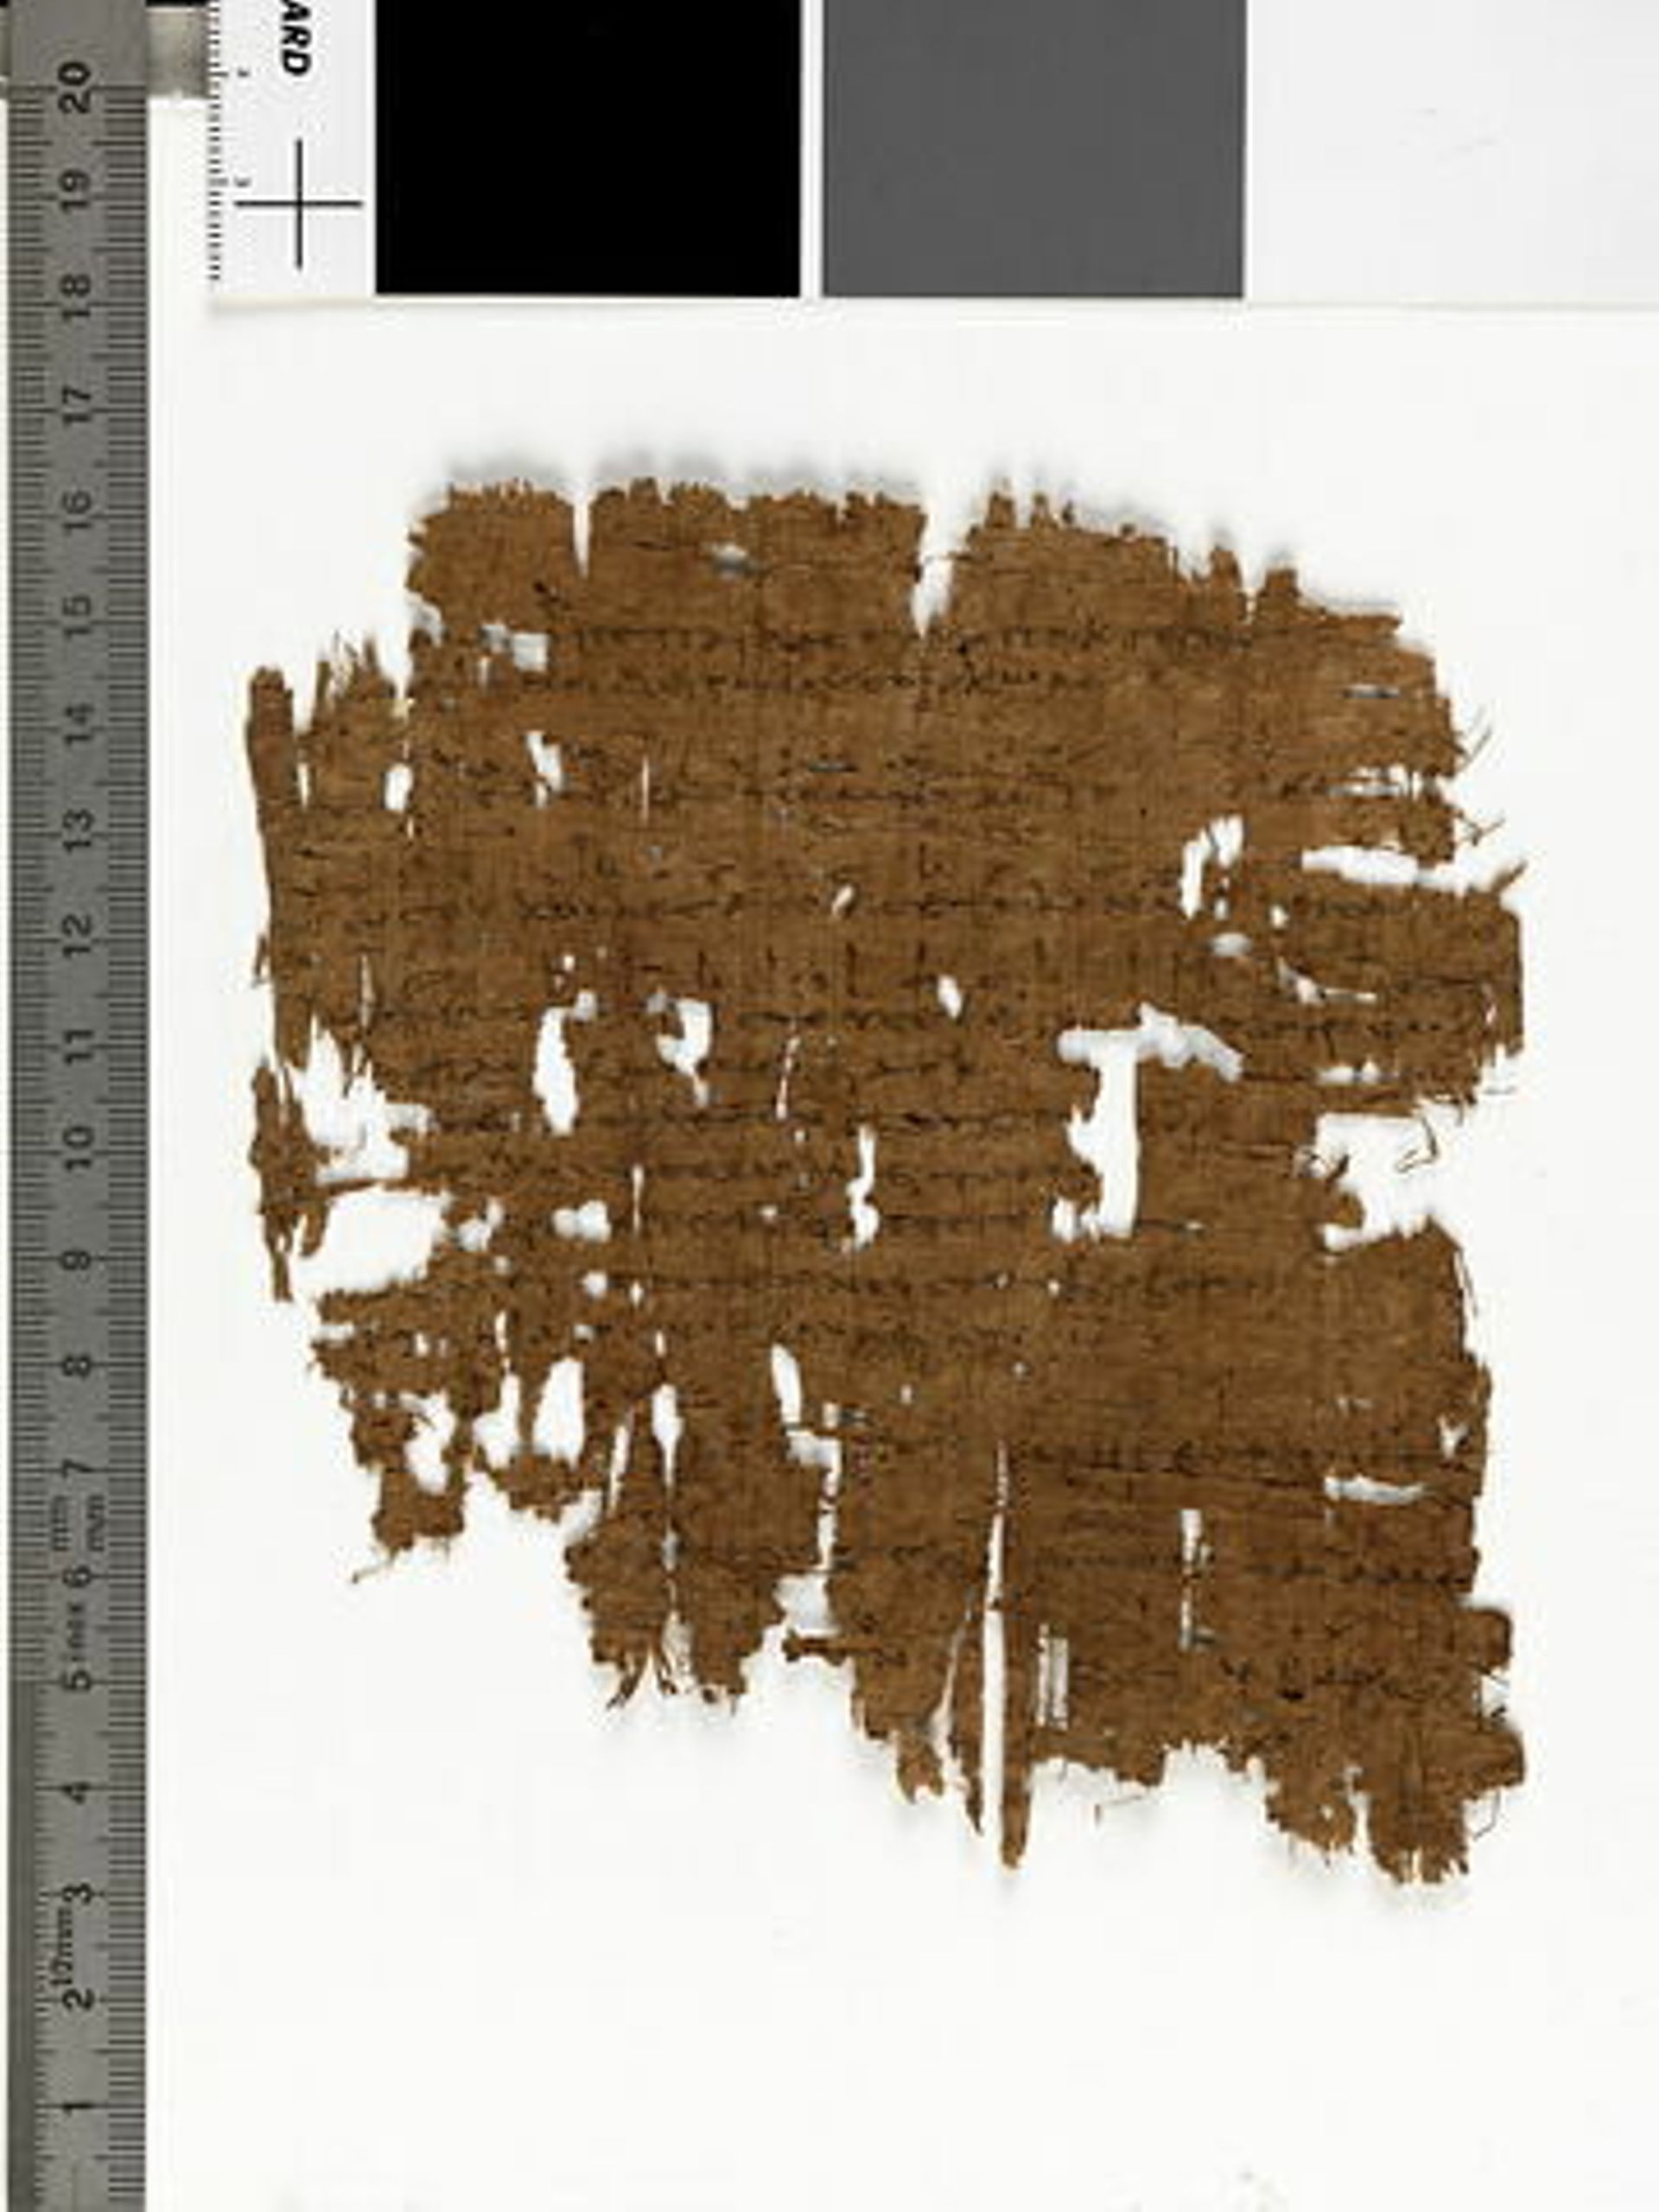 Papyrus ; Partition de Médée de Carcinos le jeune
Musée du Louvre, Département des Antiquités égyptiennes, E 10534 - https://collections.louvre.fr/ark:/53355/cl010001948 - https://collections.louvre.fr/CGU